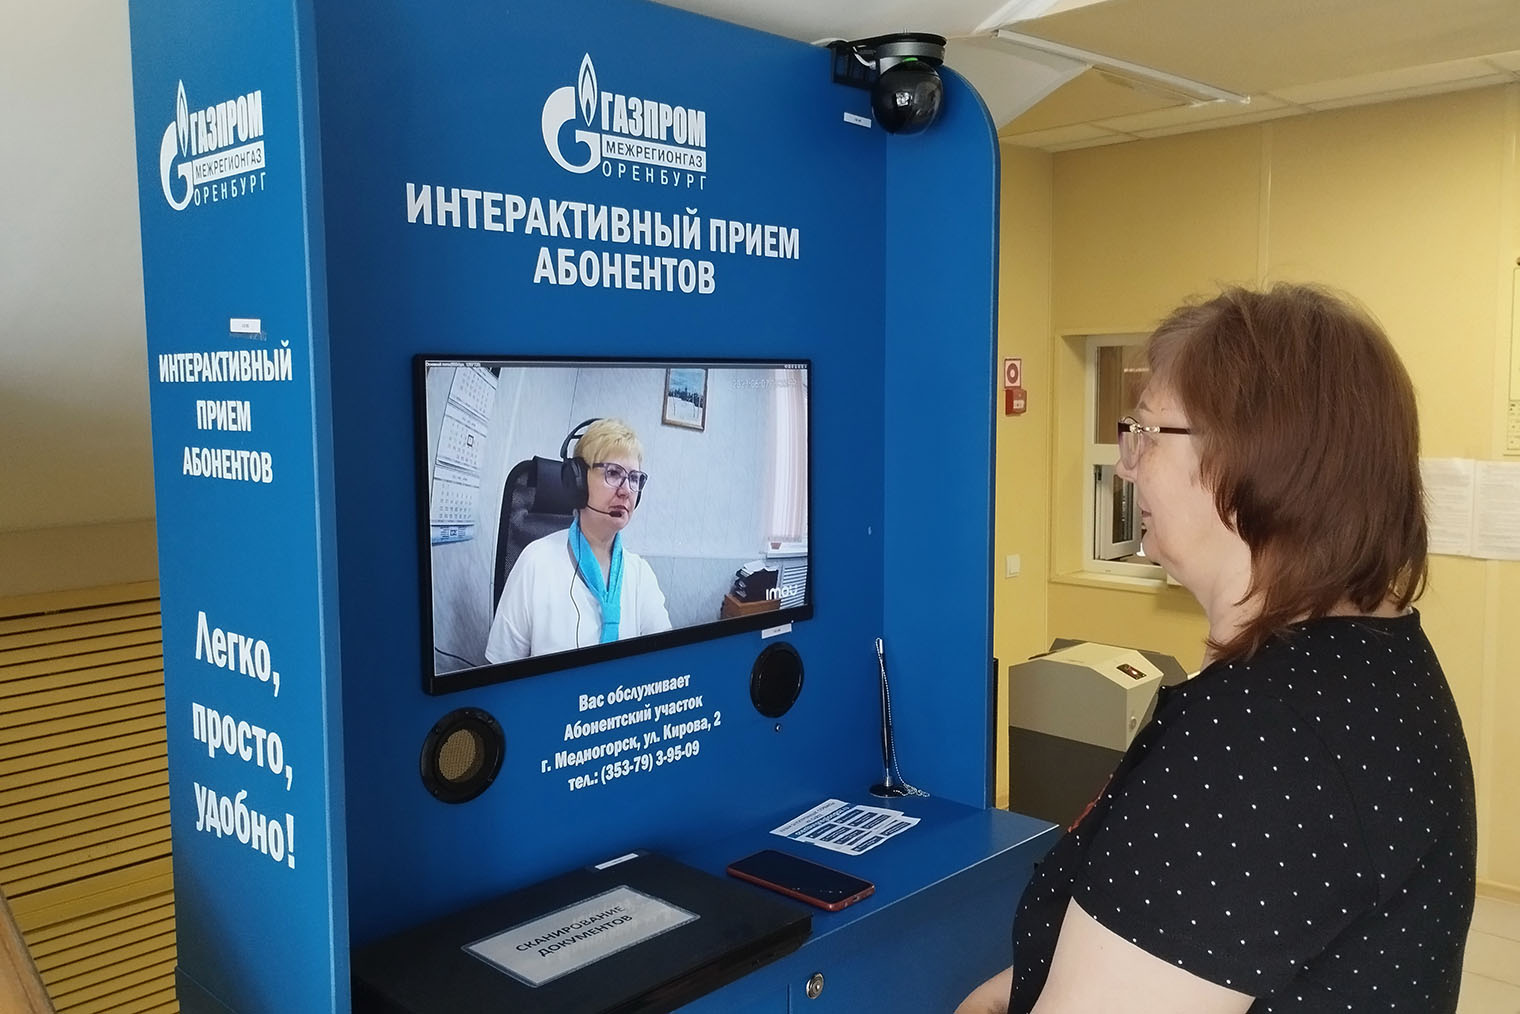 Терминал «Газпрома» в Оренбурге — это что⁠-⁠то вроде виртуального офиса компании. Источник: orenburgregiongaz.ru